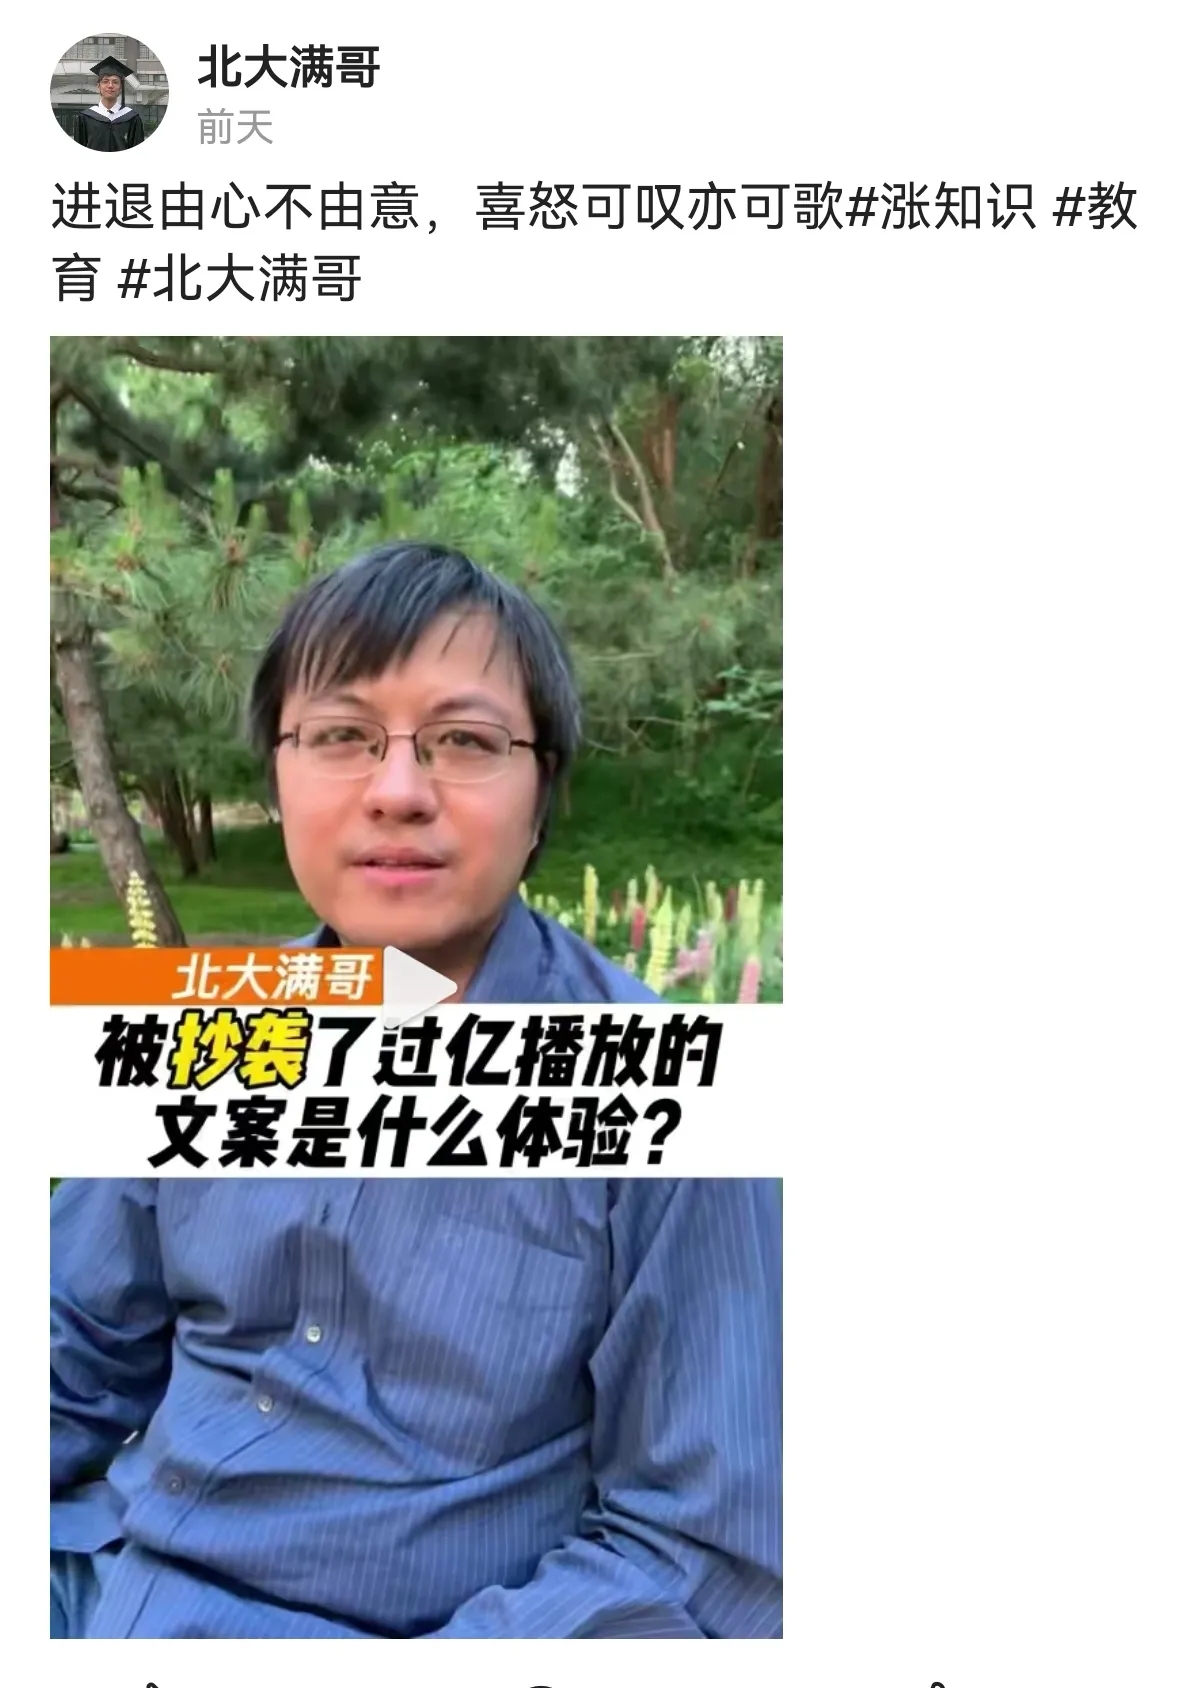 刘德华回应奥迪广告涉嫌抄袭 奥迪发公告致歉